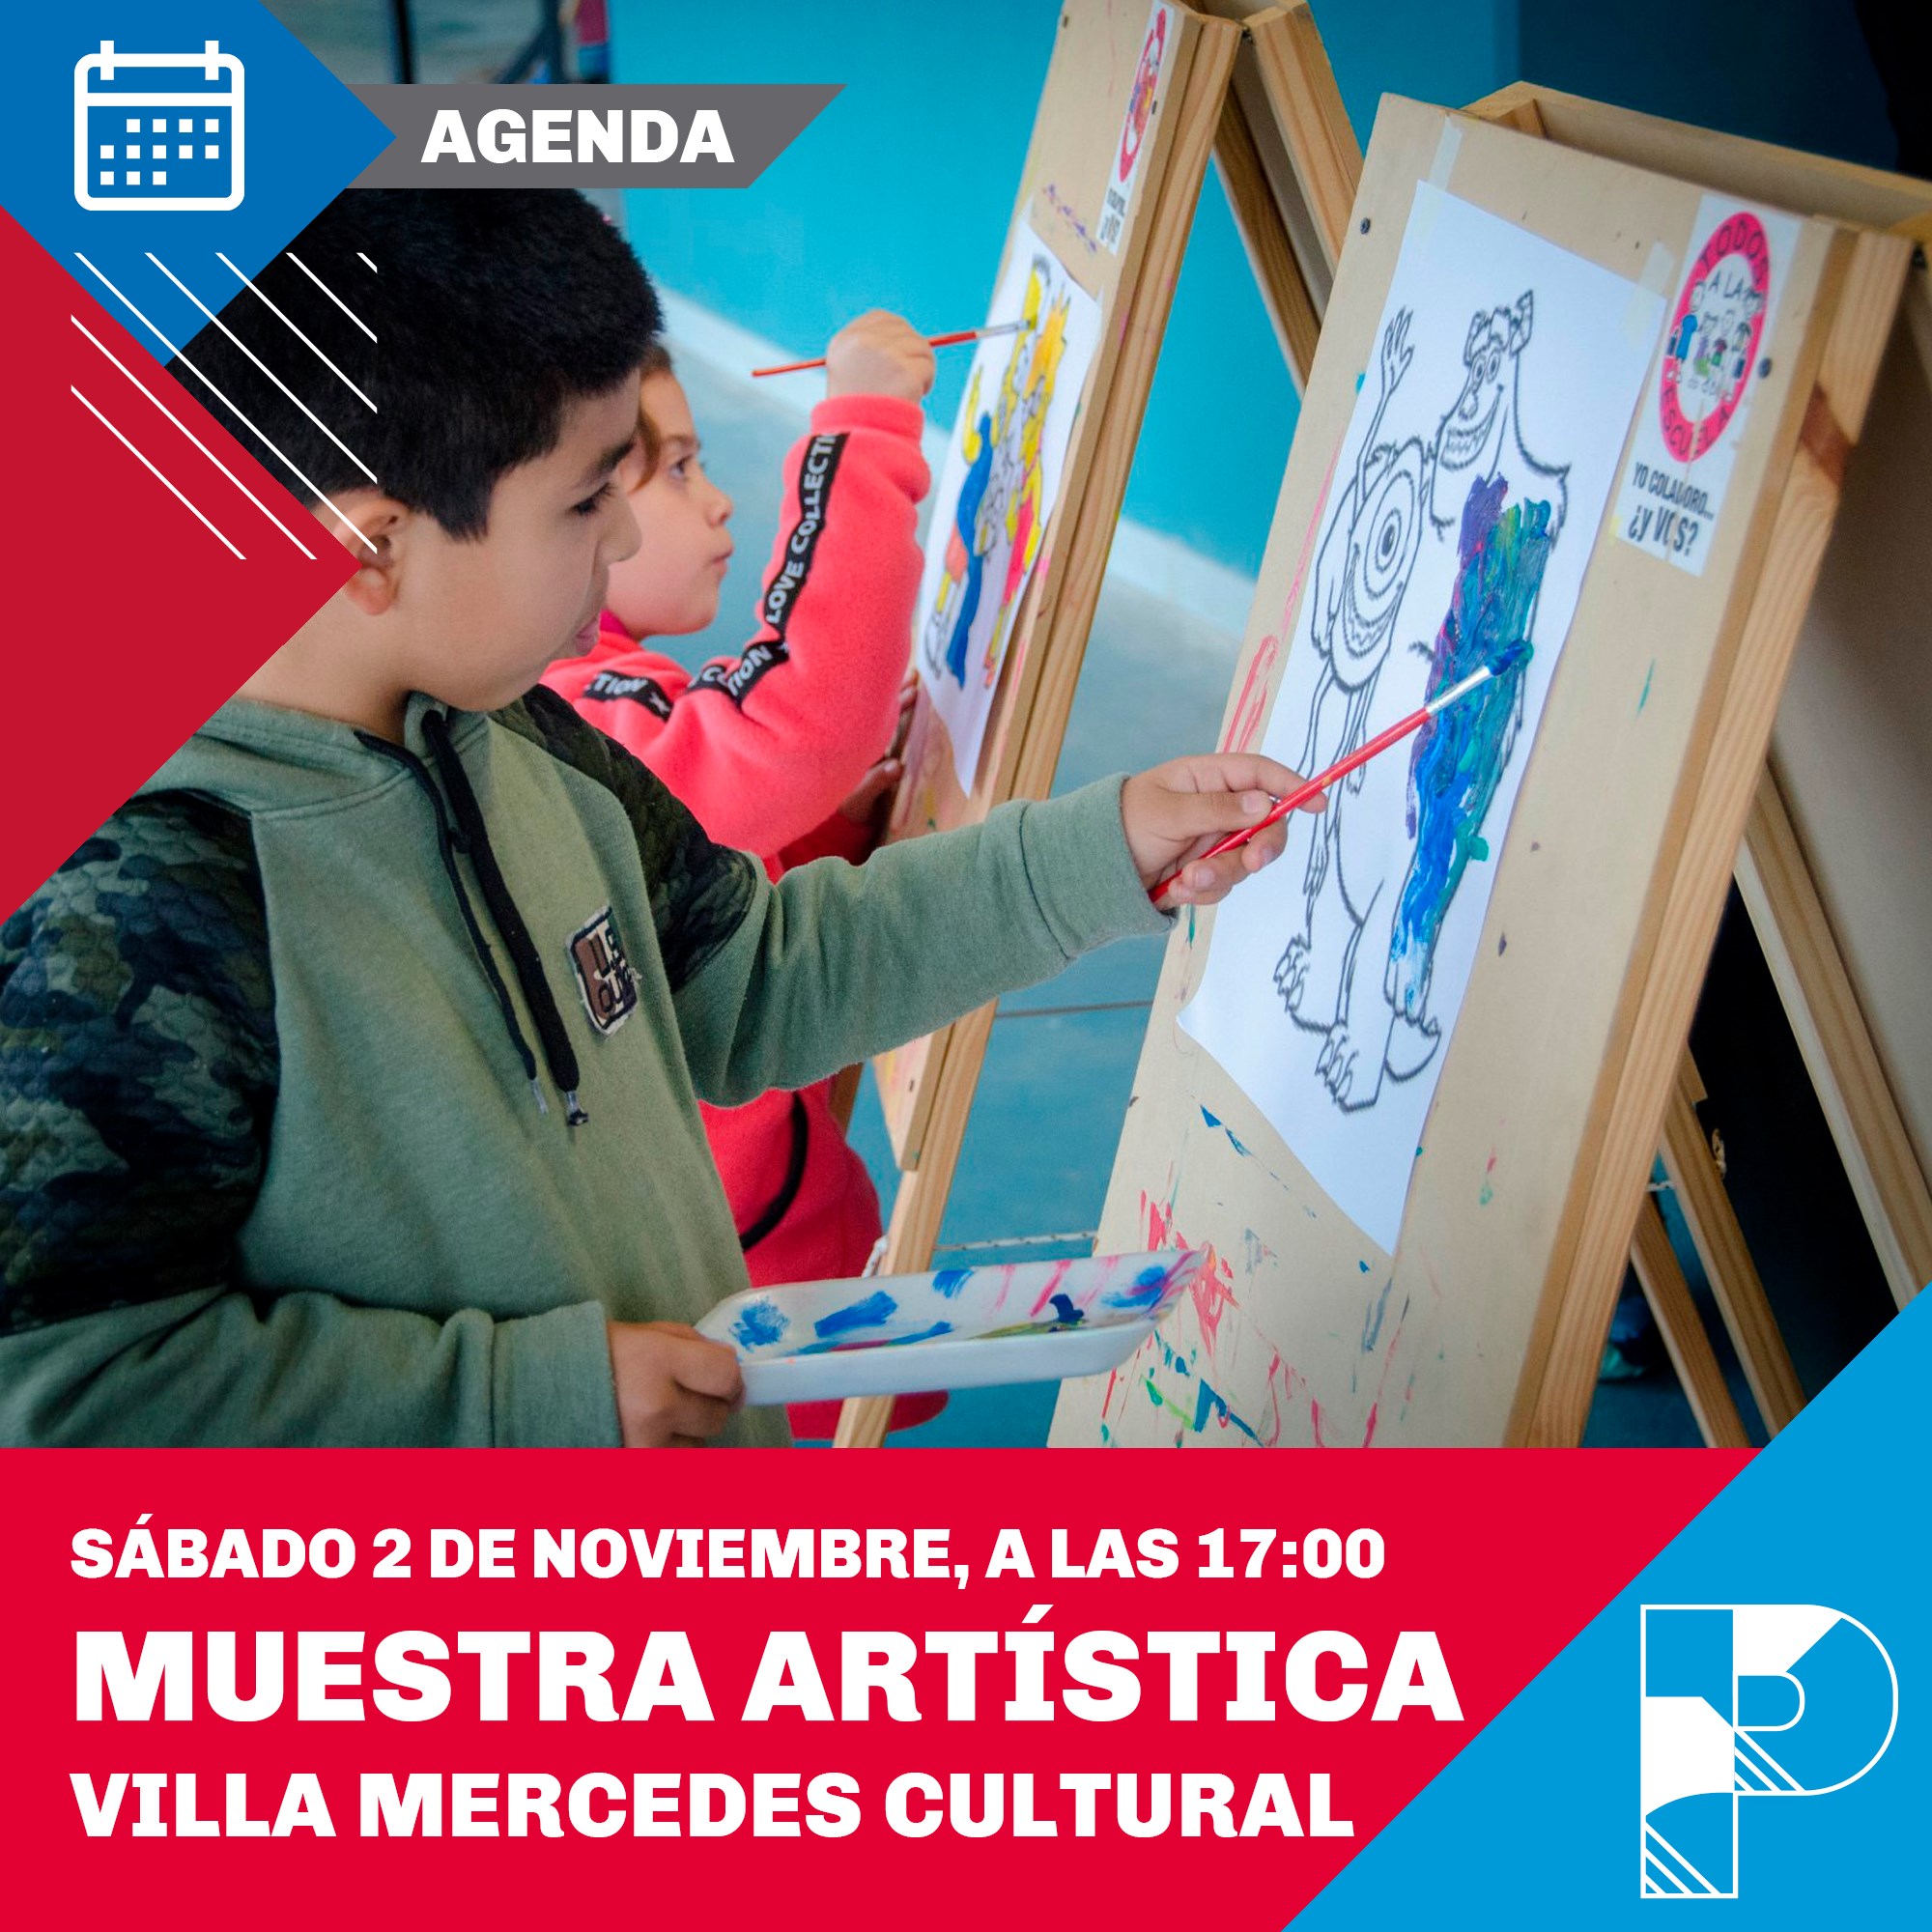 Arte y cultura este sábado en La Pedrera